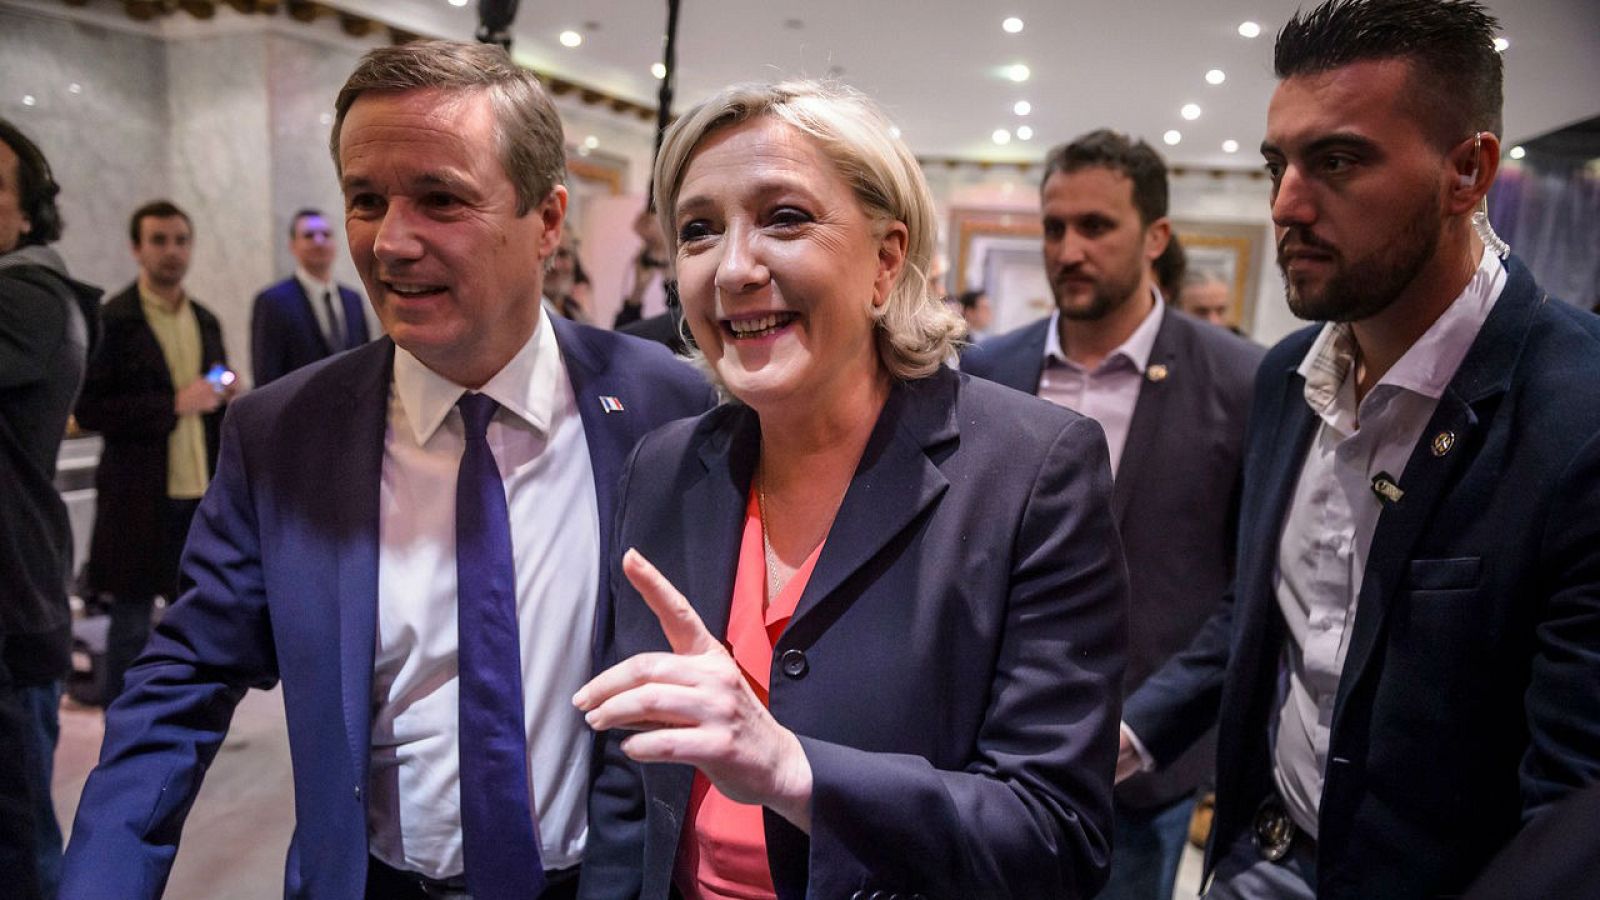 Informativos fin de semana - 14 horas - Le Pen dice que "el euro ha muerto" y quiere doble moneda para Francia - Escuchar ahora